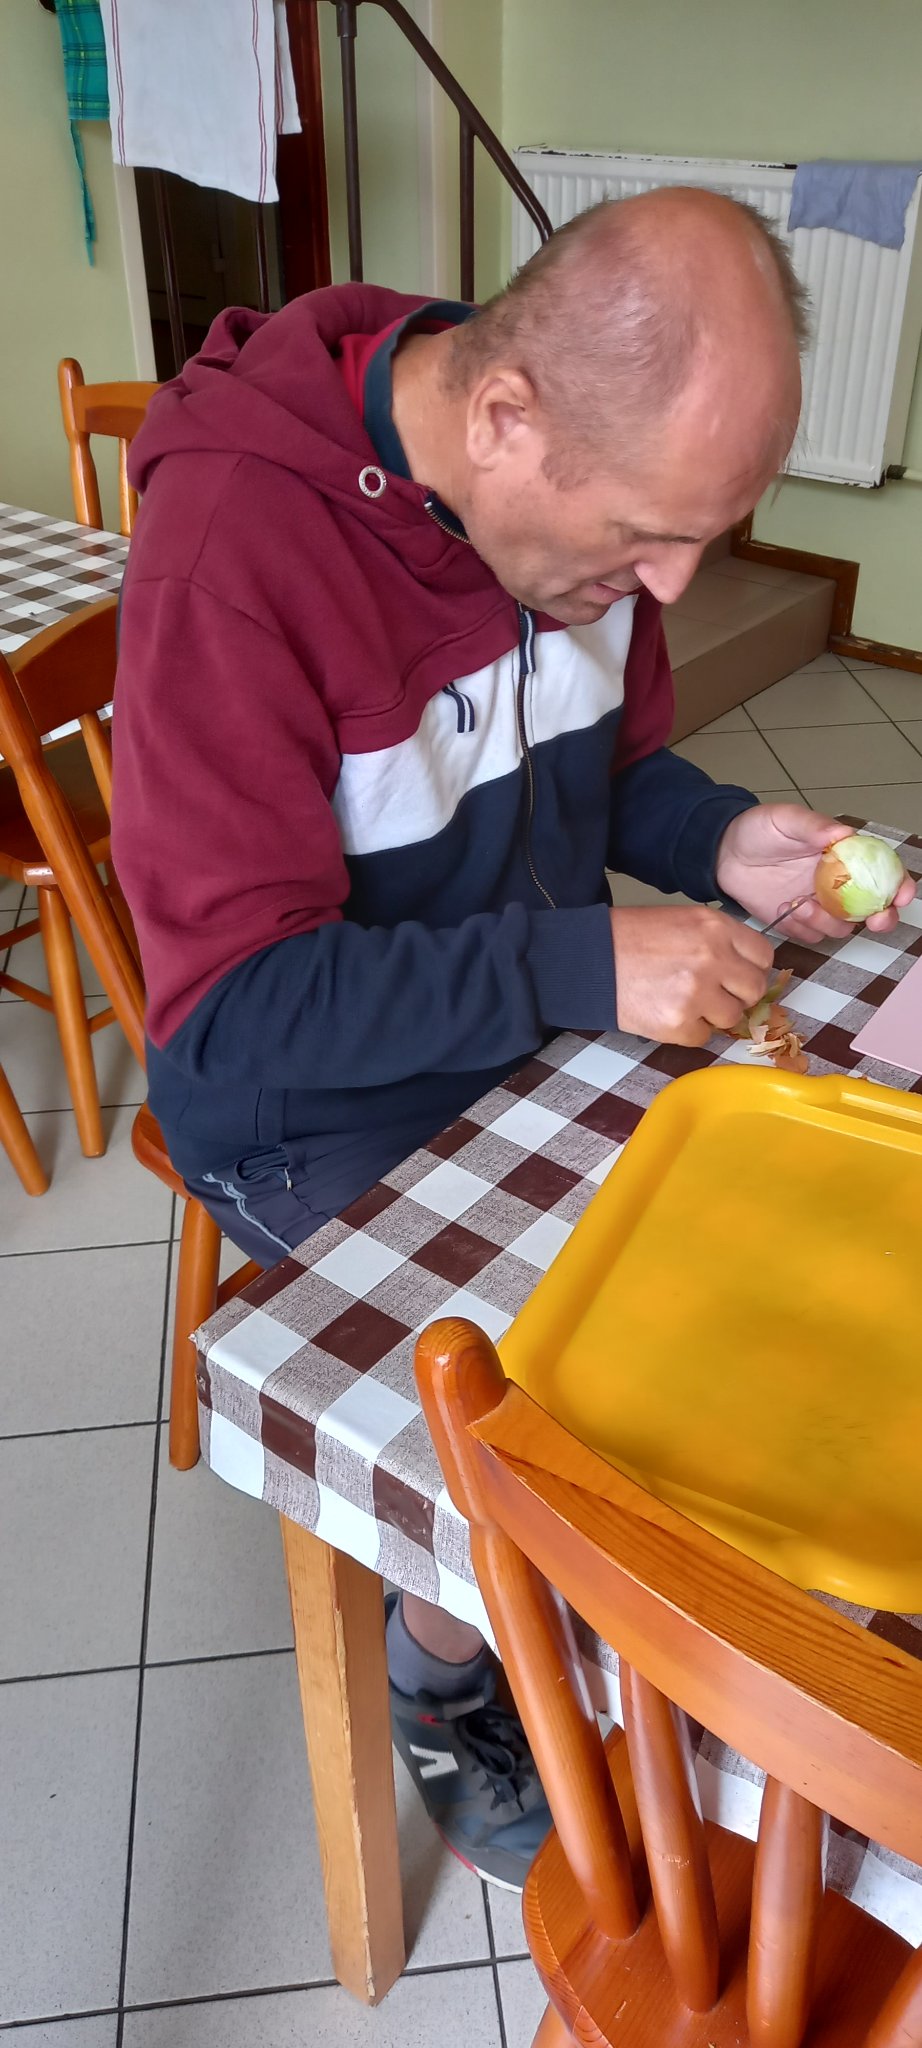 Mężczyzna ubran w bluzę dresową i krótkie sportowe spodenki siedzi przy stole gdzie obiera cebulę.